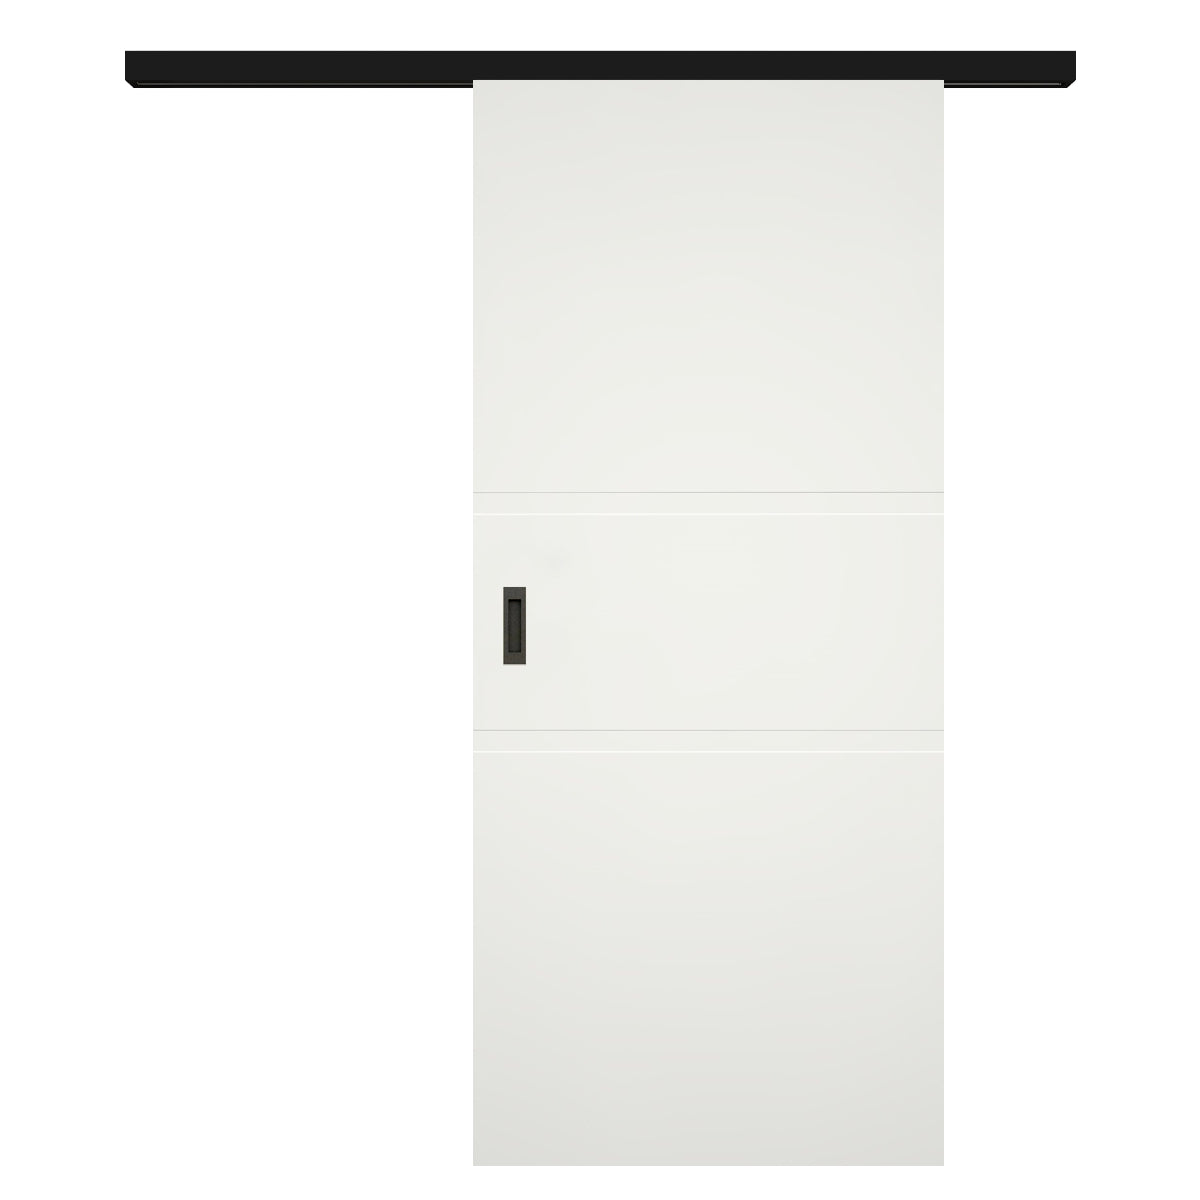 Schiebetür für Set mit schwarzem Laufkasten soft-weiß 2 breite Rillen - Modell Designtür QB21